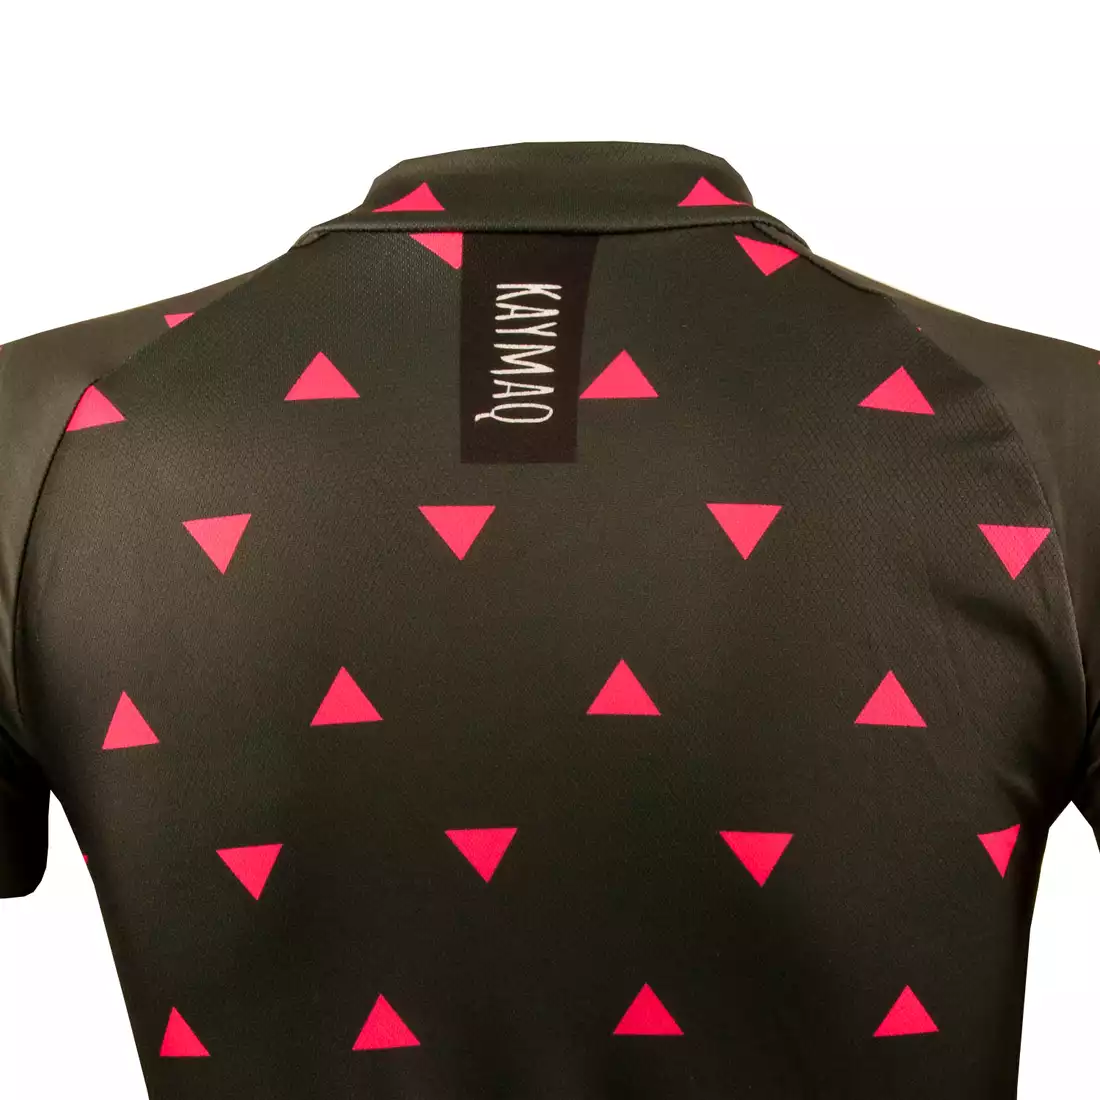 KAYMAQ DESIGN W1-W42 damska koszulka rowerowa krótki rękaw